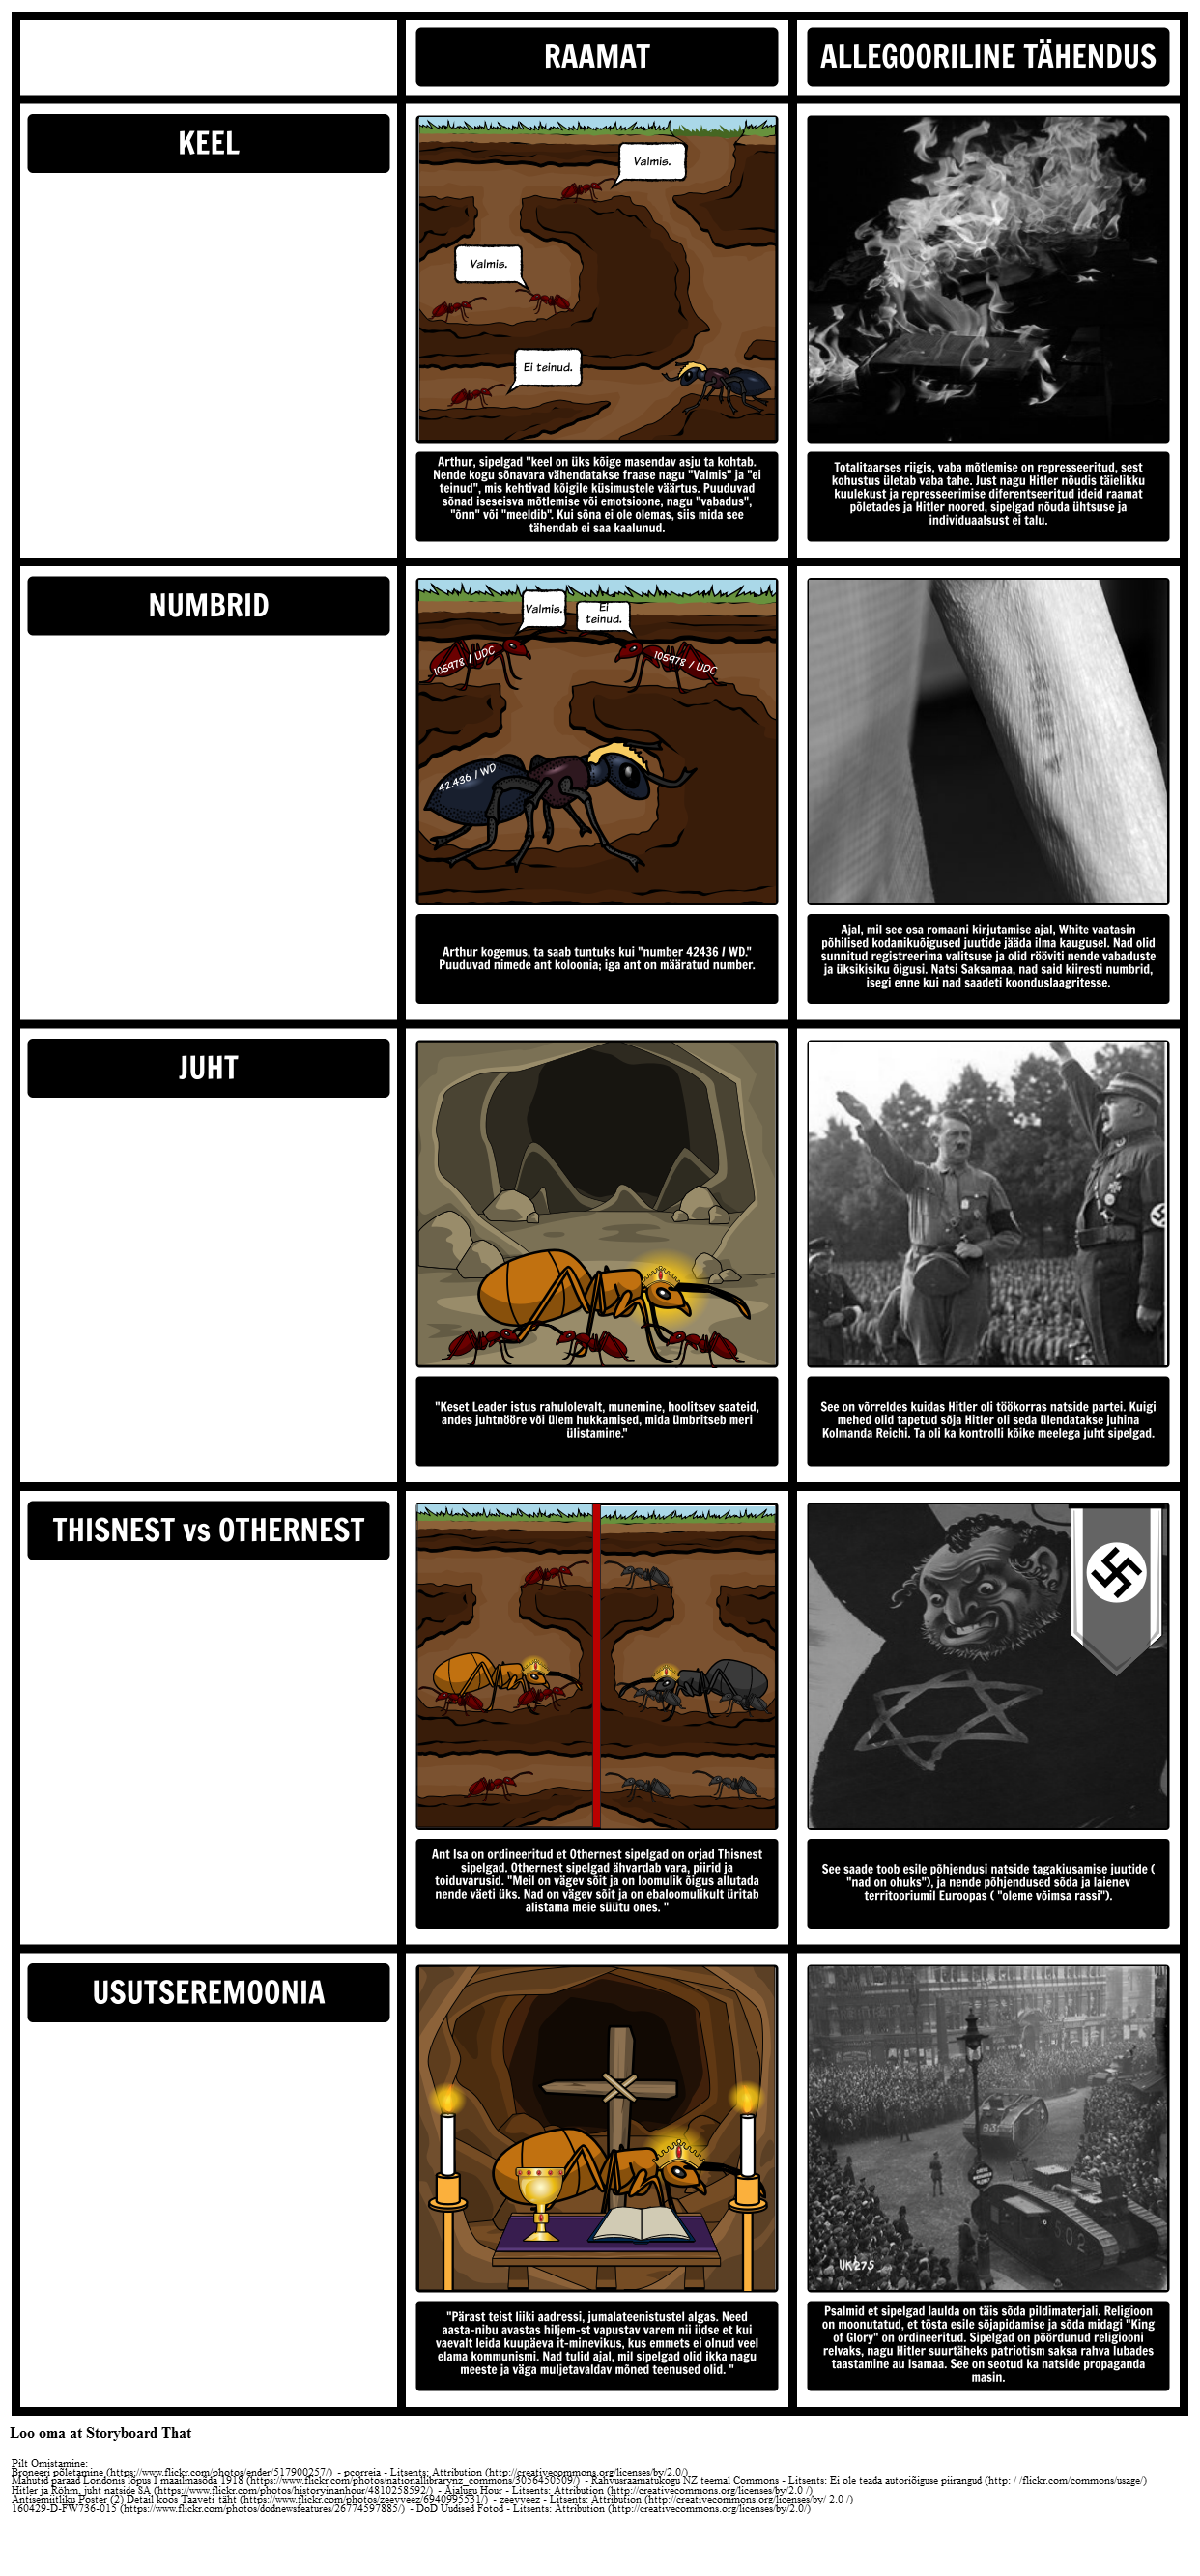 TOAFK - allegooriast õppetund sipelgatest "Mõõk kivis"